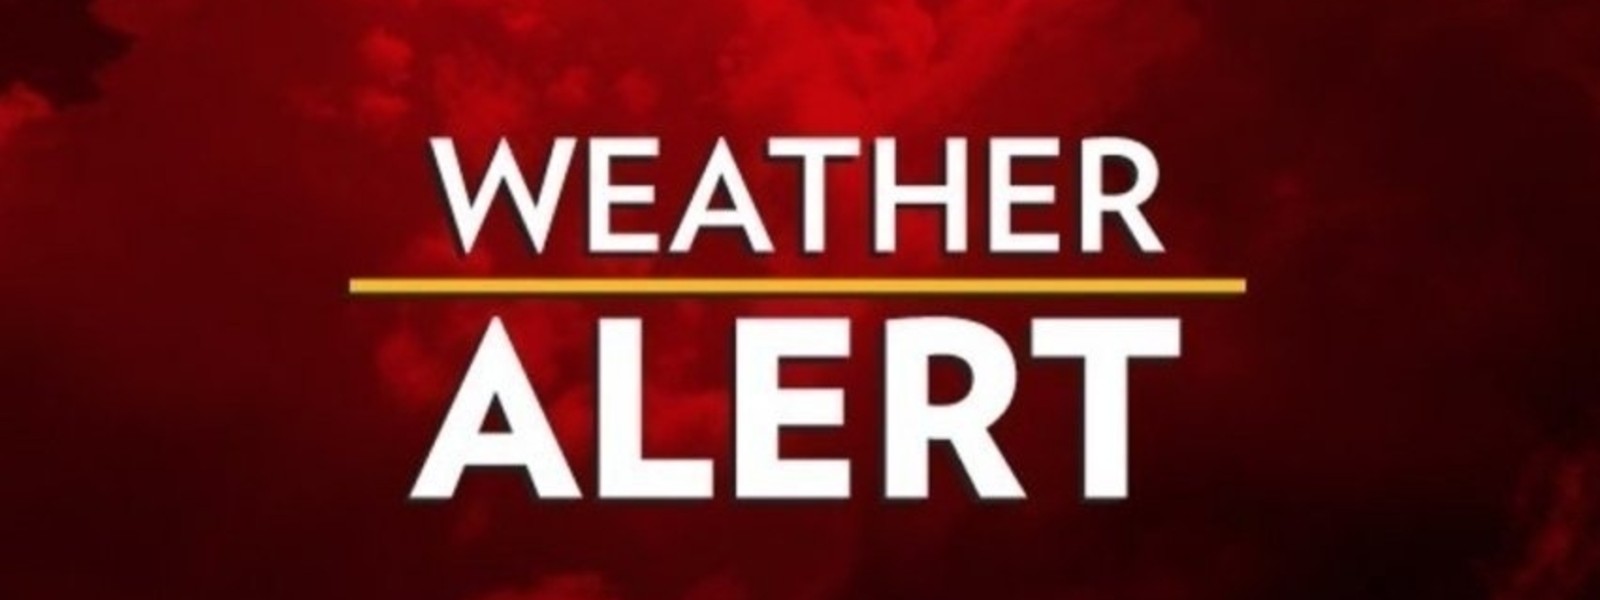 Amber alert issued for severe lightning today (09)